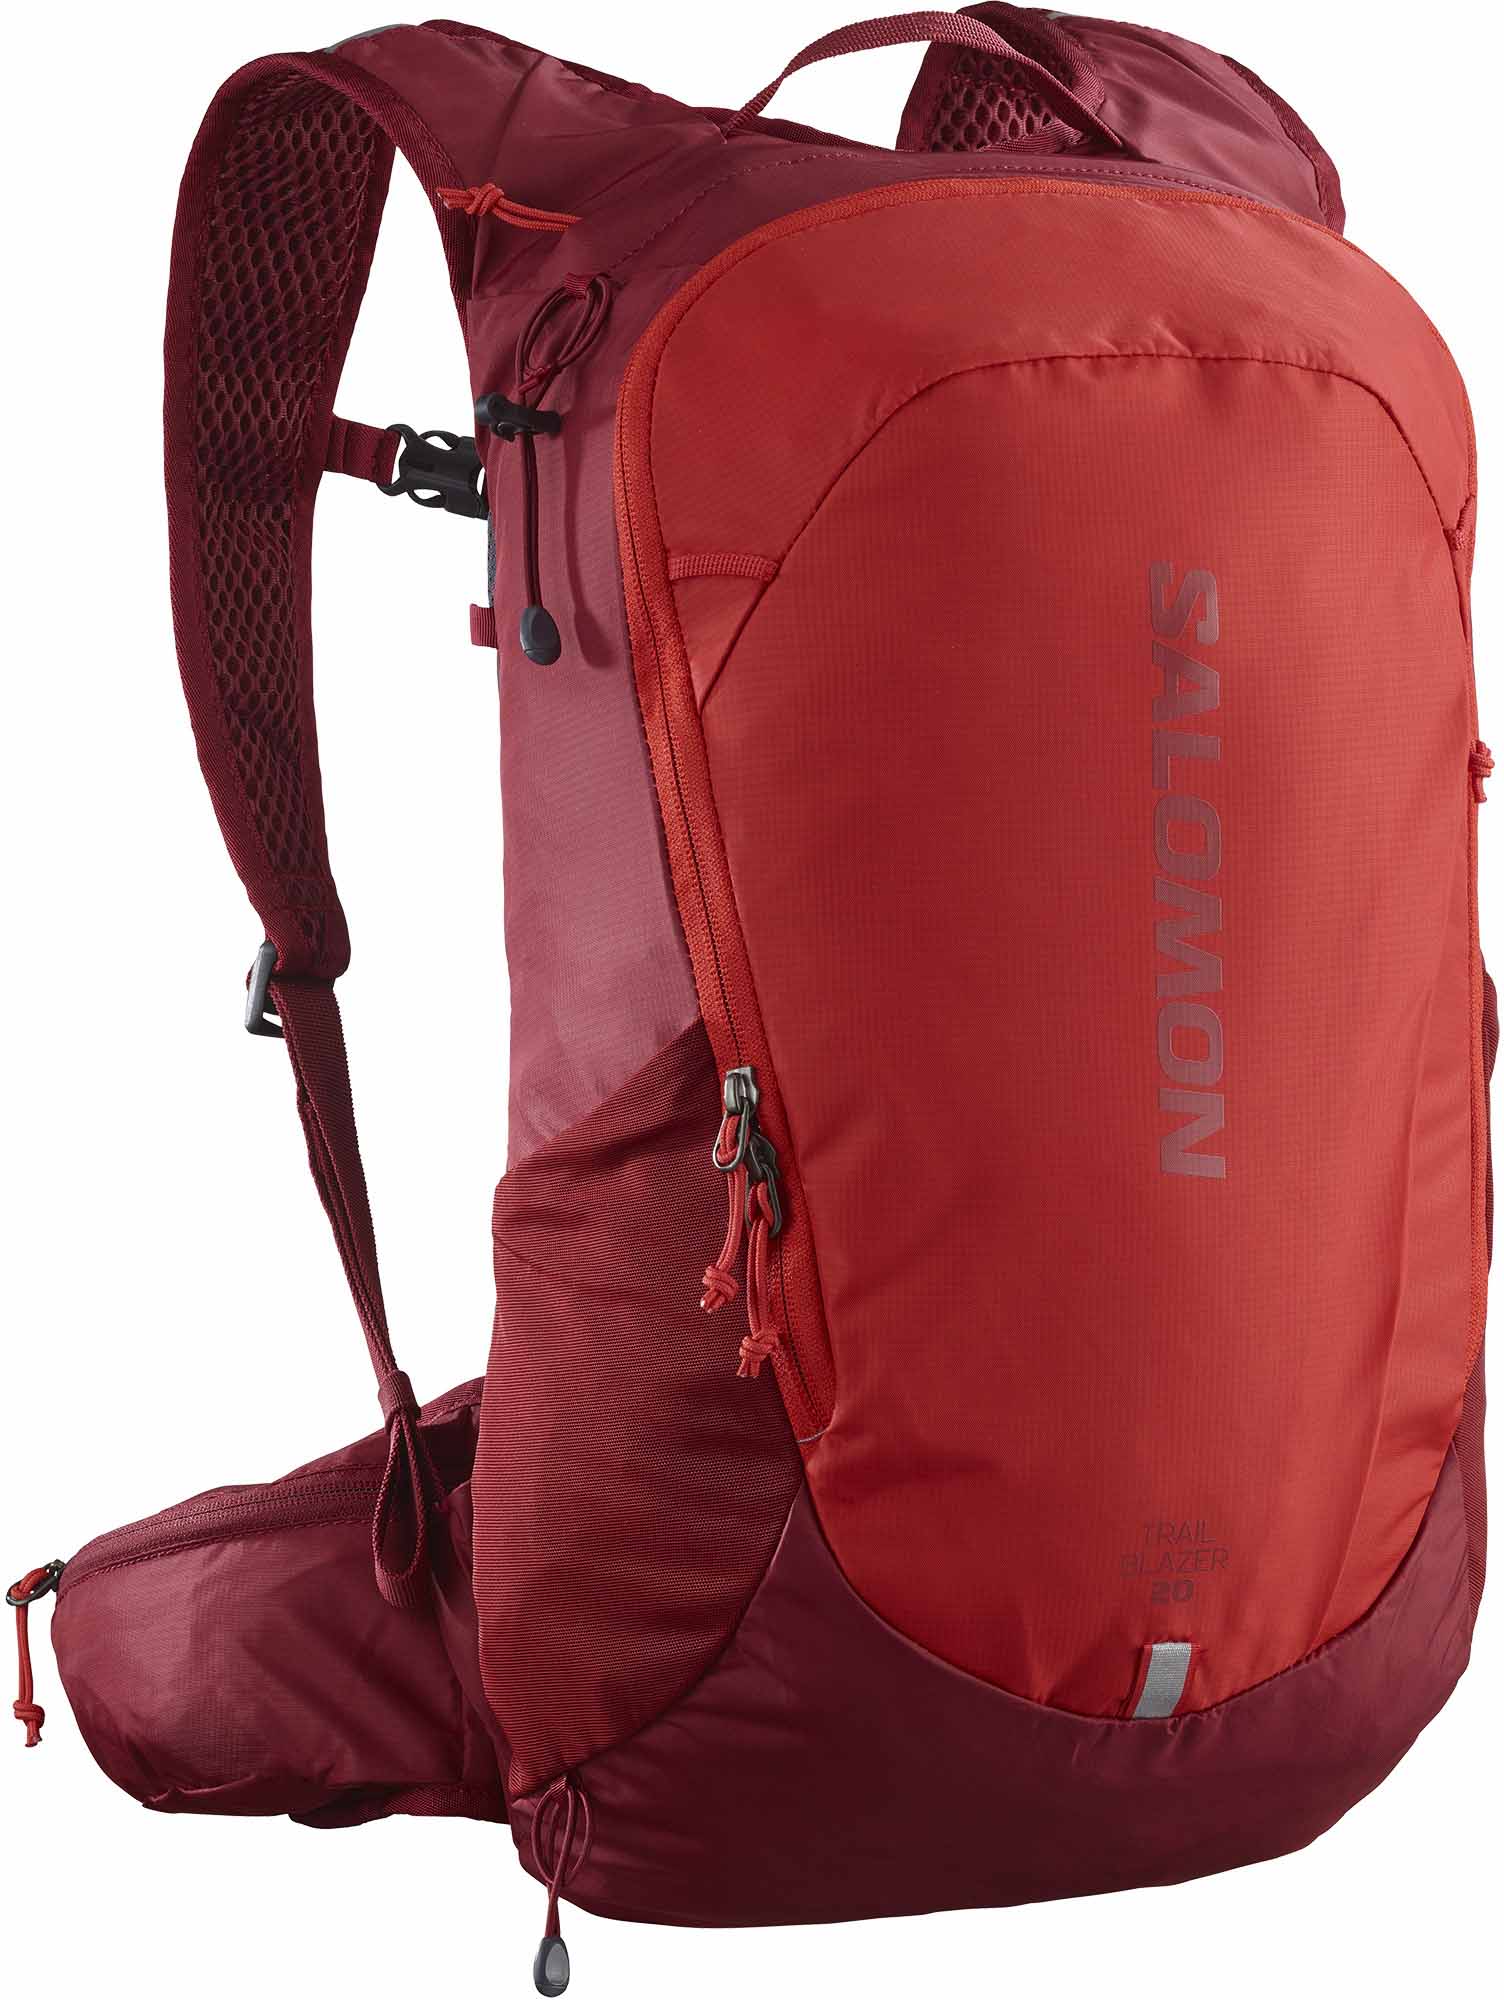 Unisex outdoor backpack